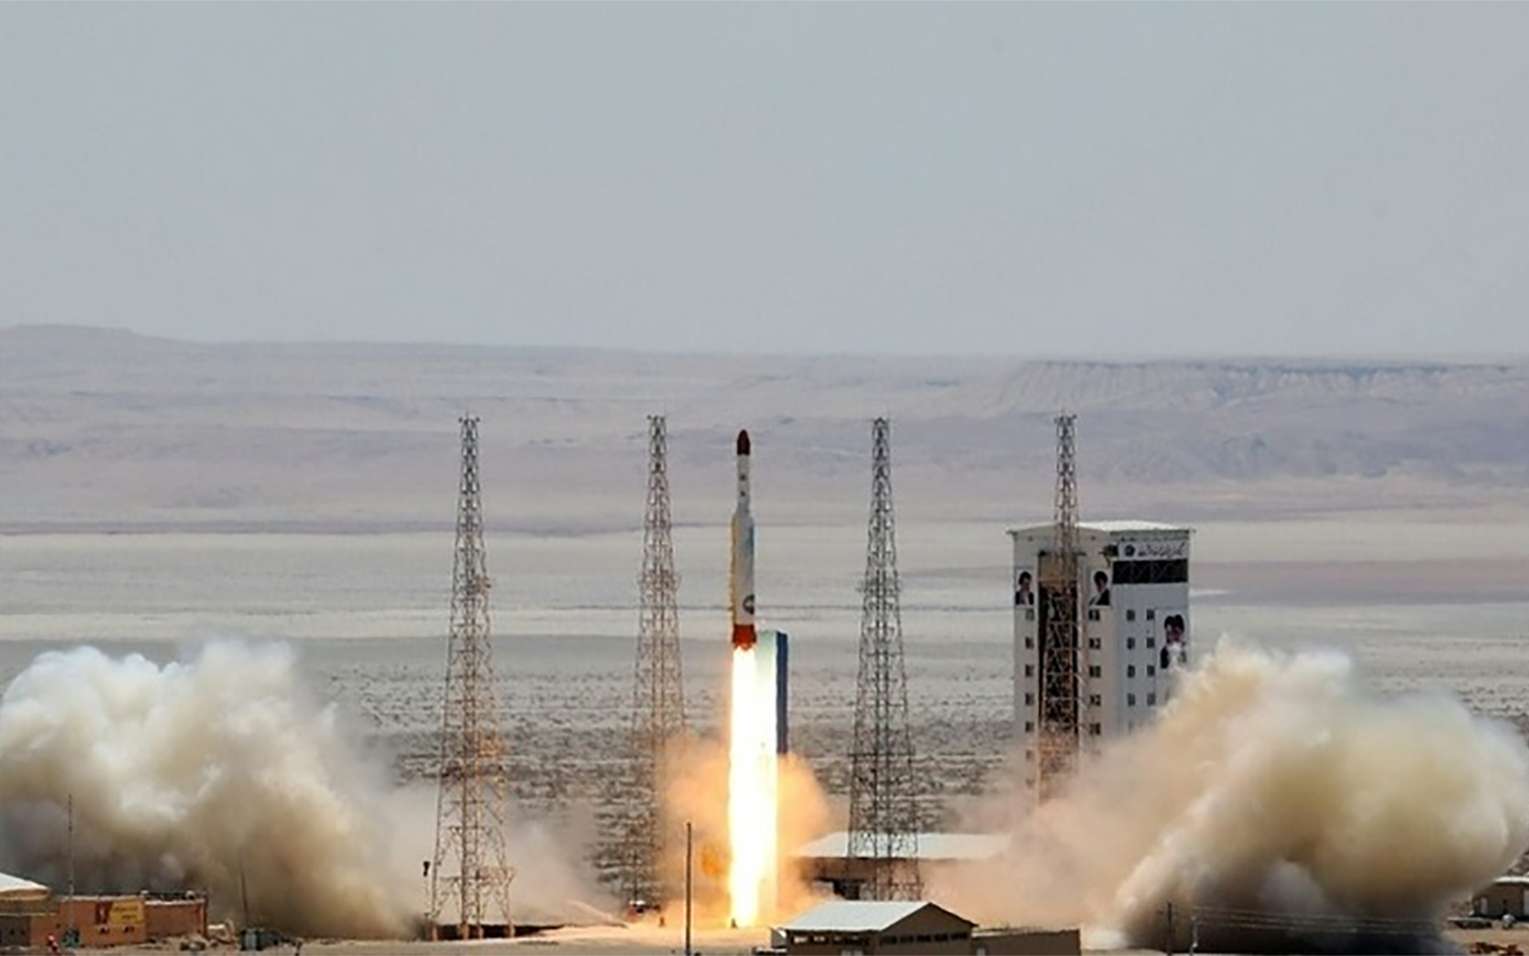 L'échec du lancement d'un satellite par l'Iran inquiète quand même les États-Unis